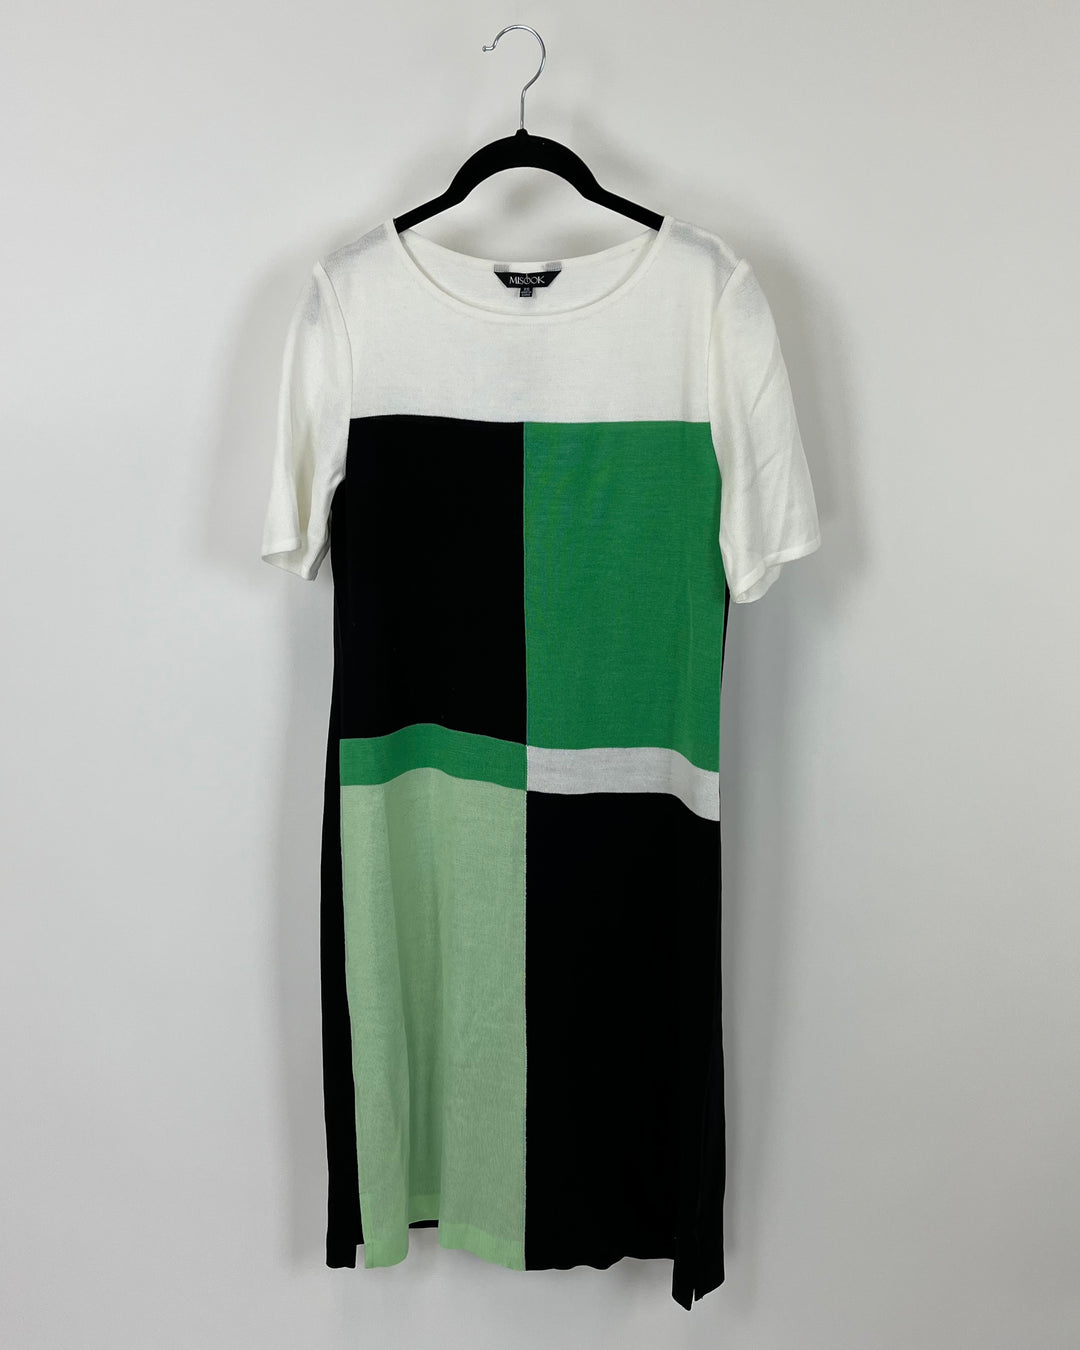 Color Block Dress - Size 2-4